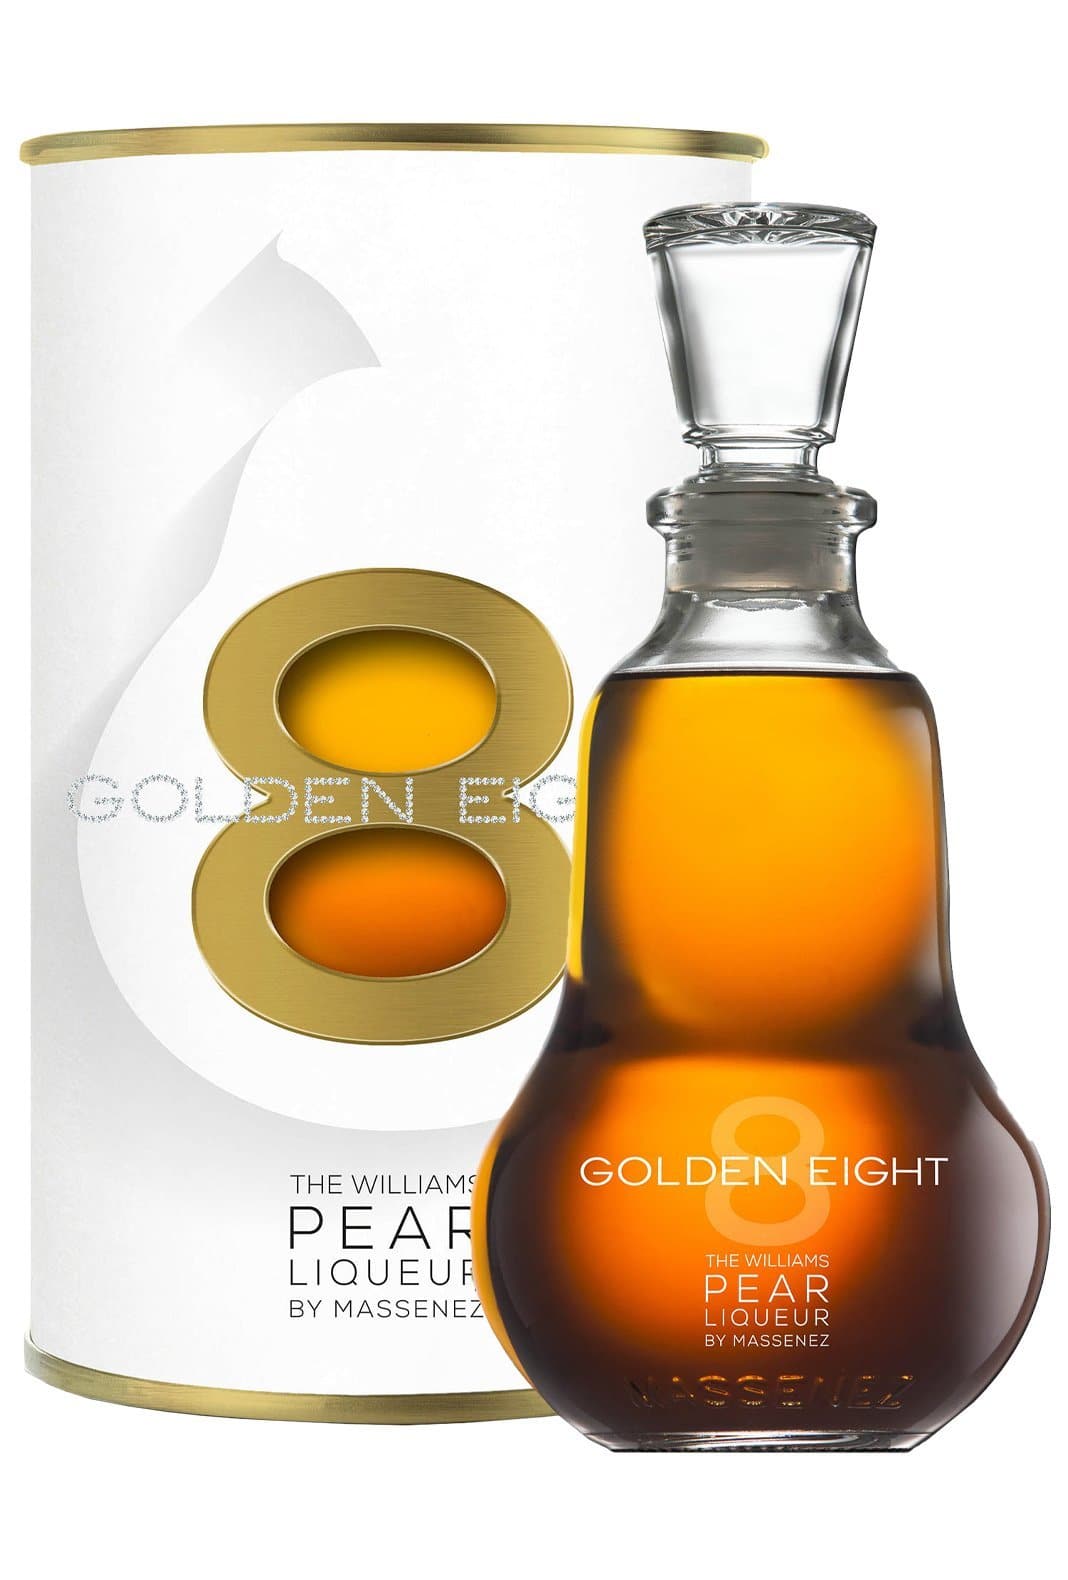 Massenez Liqueur de Poire William 'Golden Eight' (Williams Pear) 25% 700ml | Liqueurs | Shop online at Spirits of France